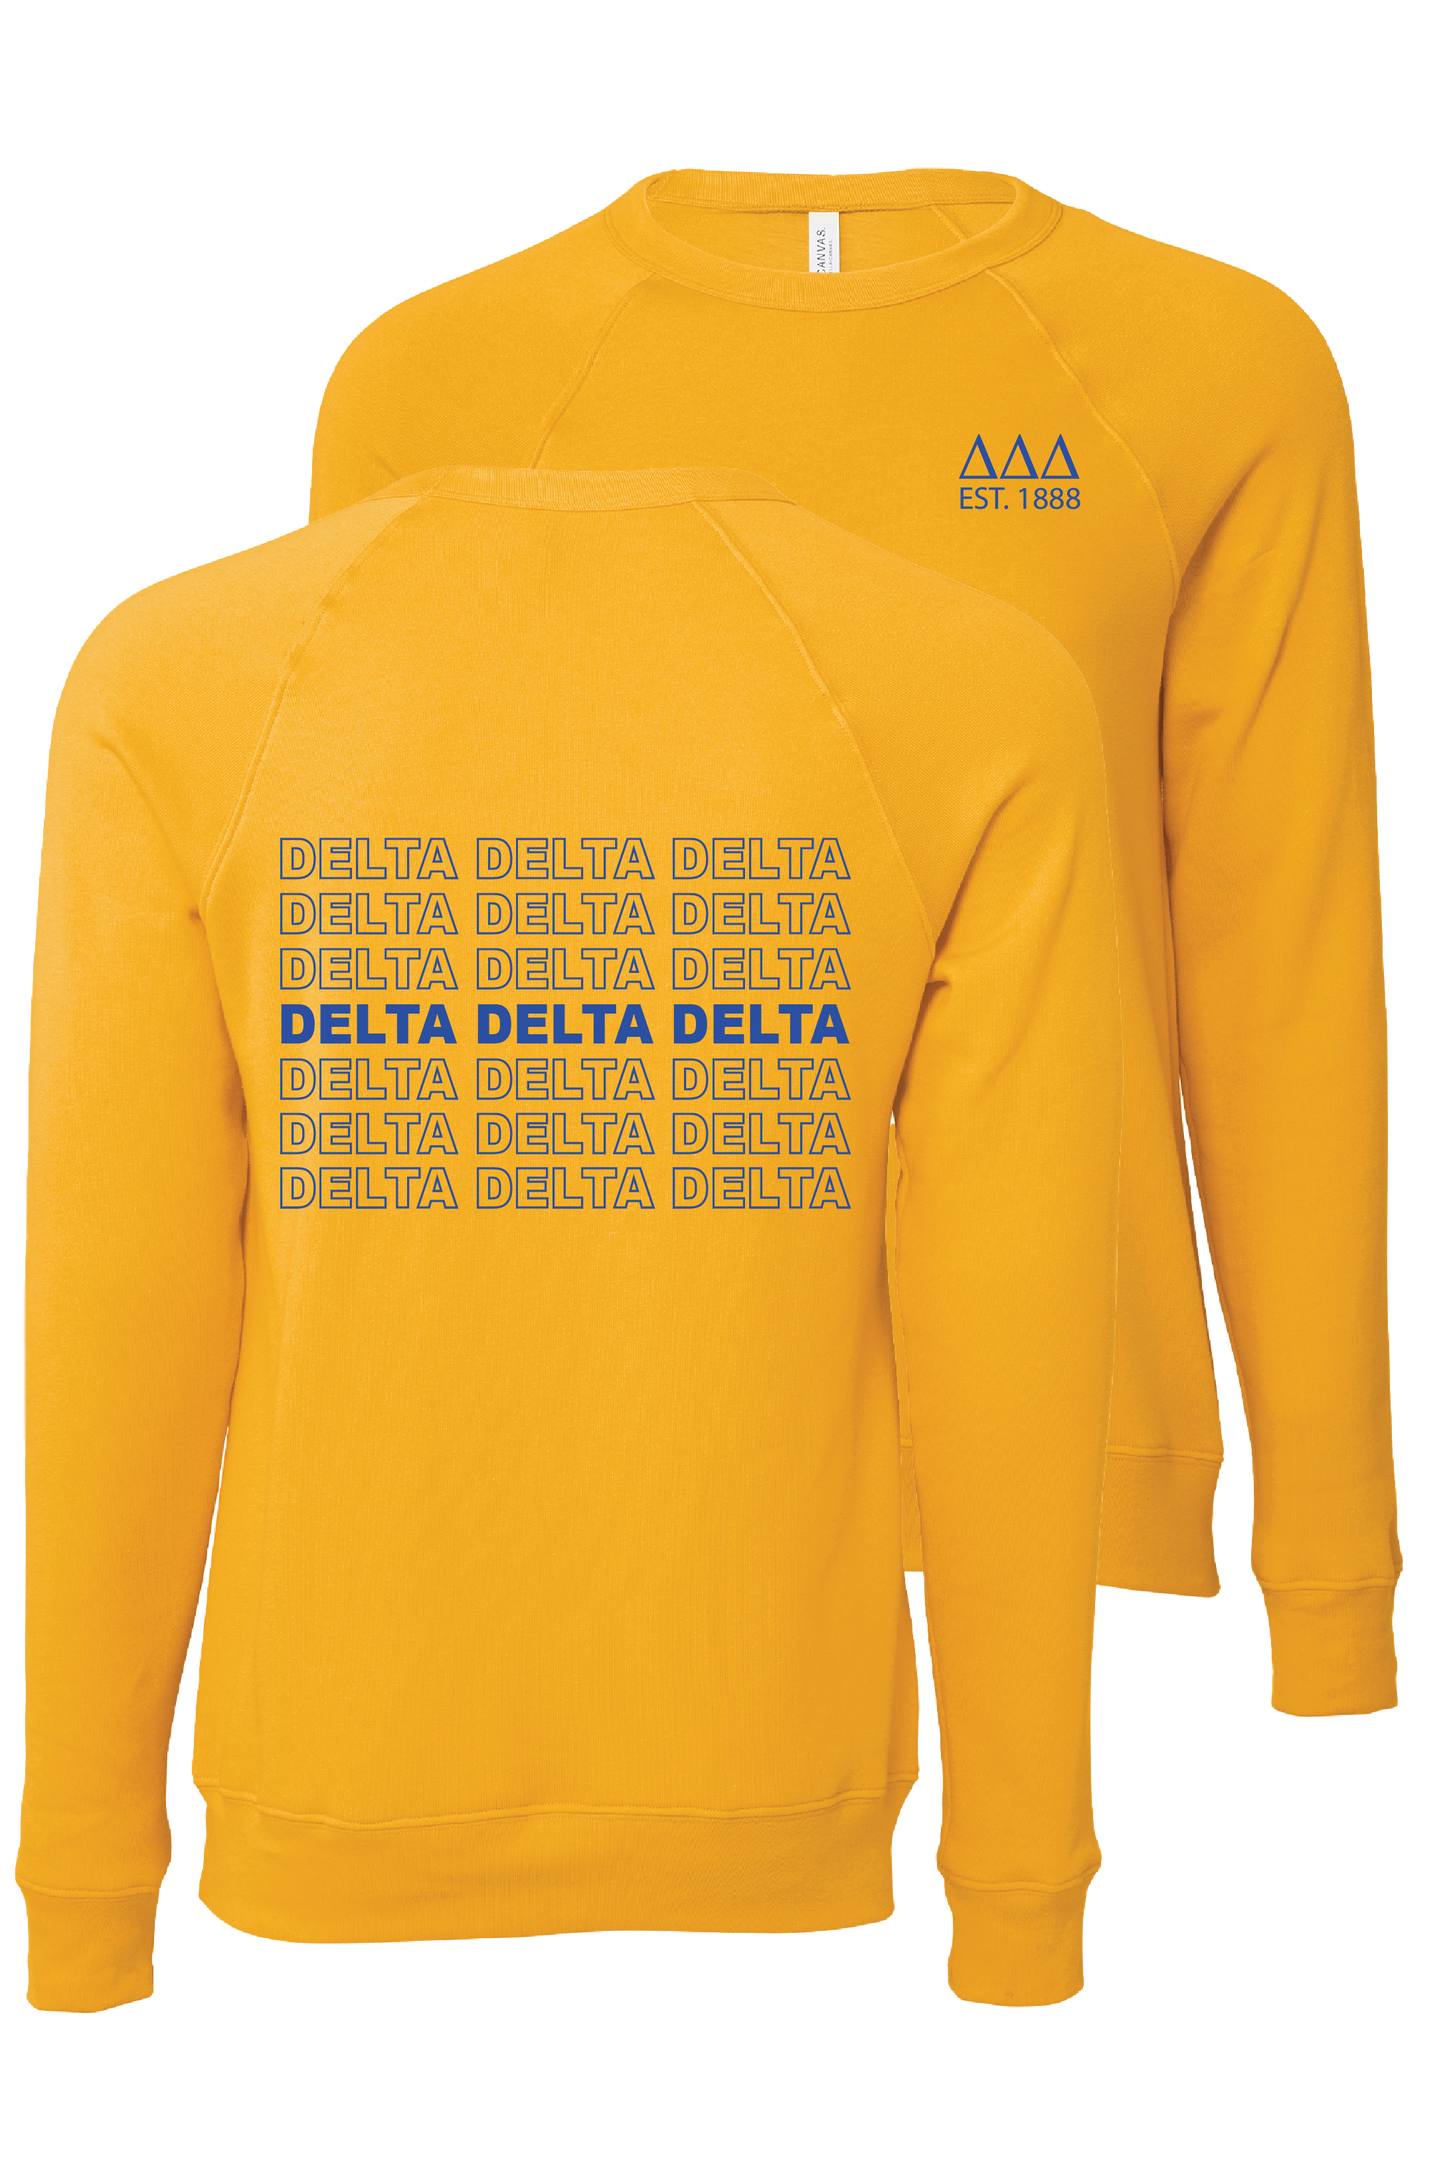 Delta Delta Delta Repeating Name Crewneck Sweatshirts